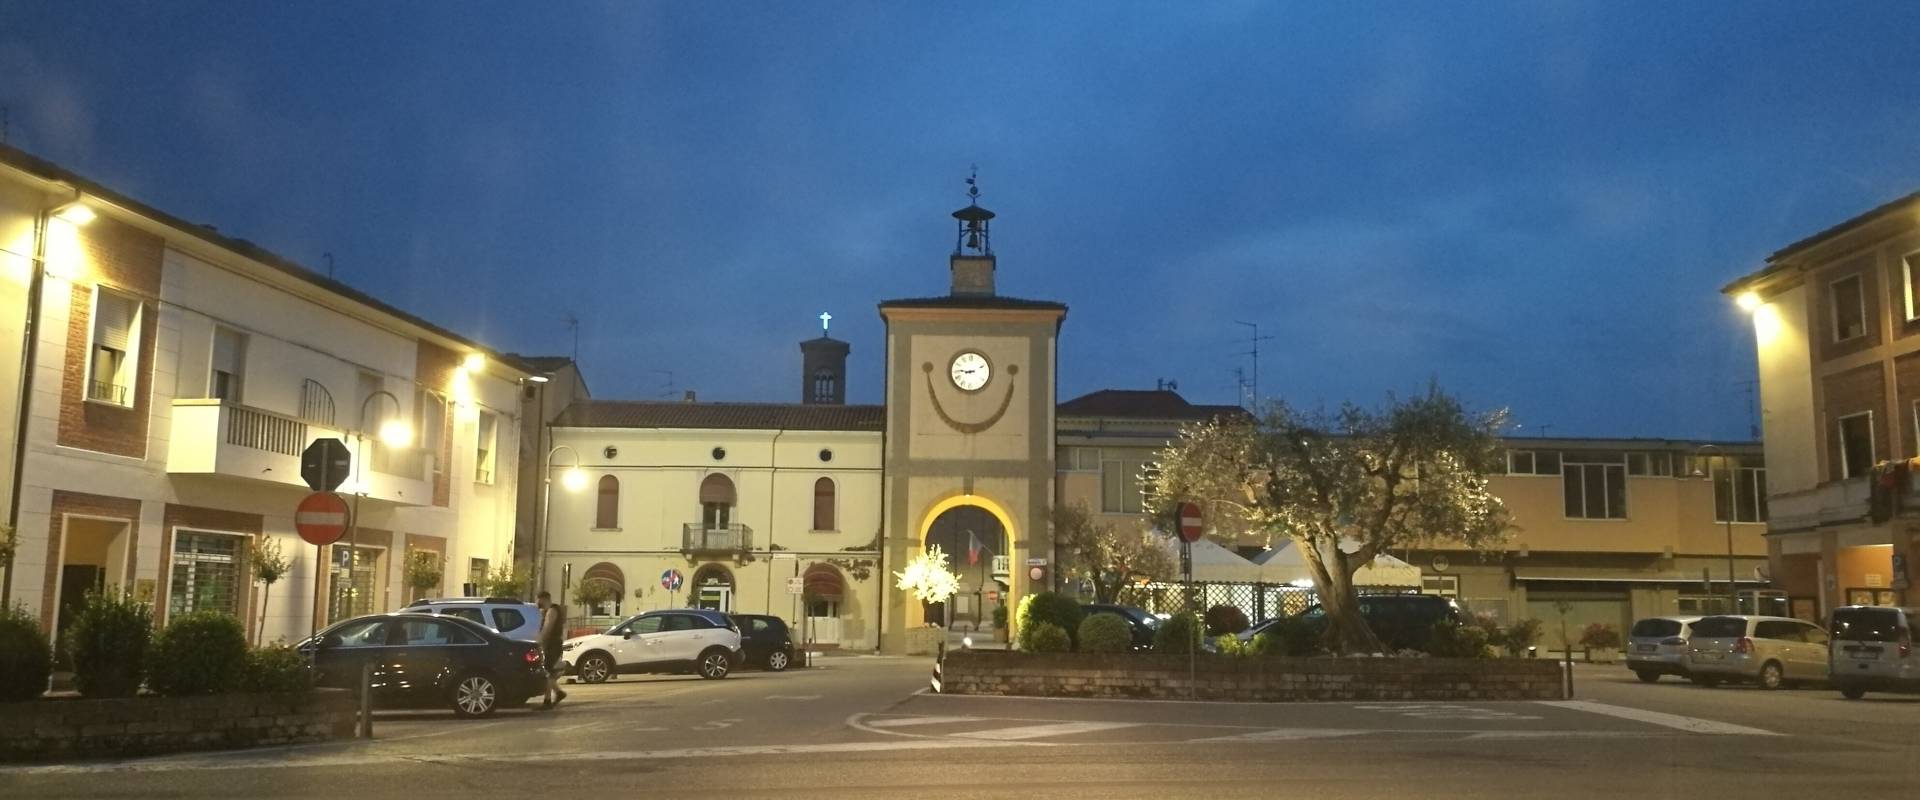 Torre civica (o Torre dell'Orologio) - Sant'Agata sul Santerno (RA) 3 photo by Enea Emiliani